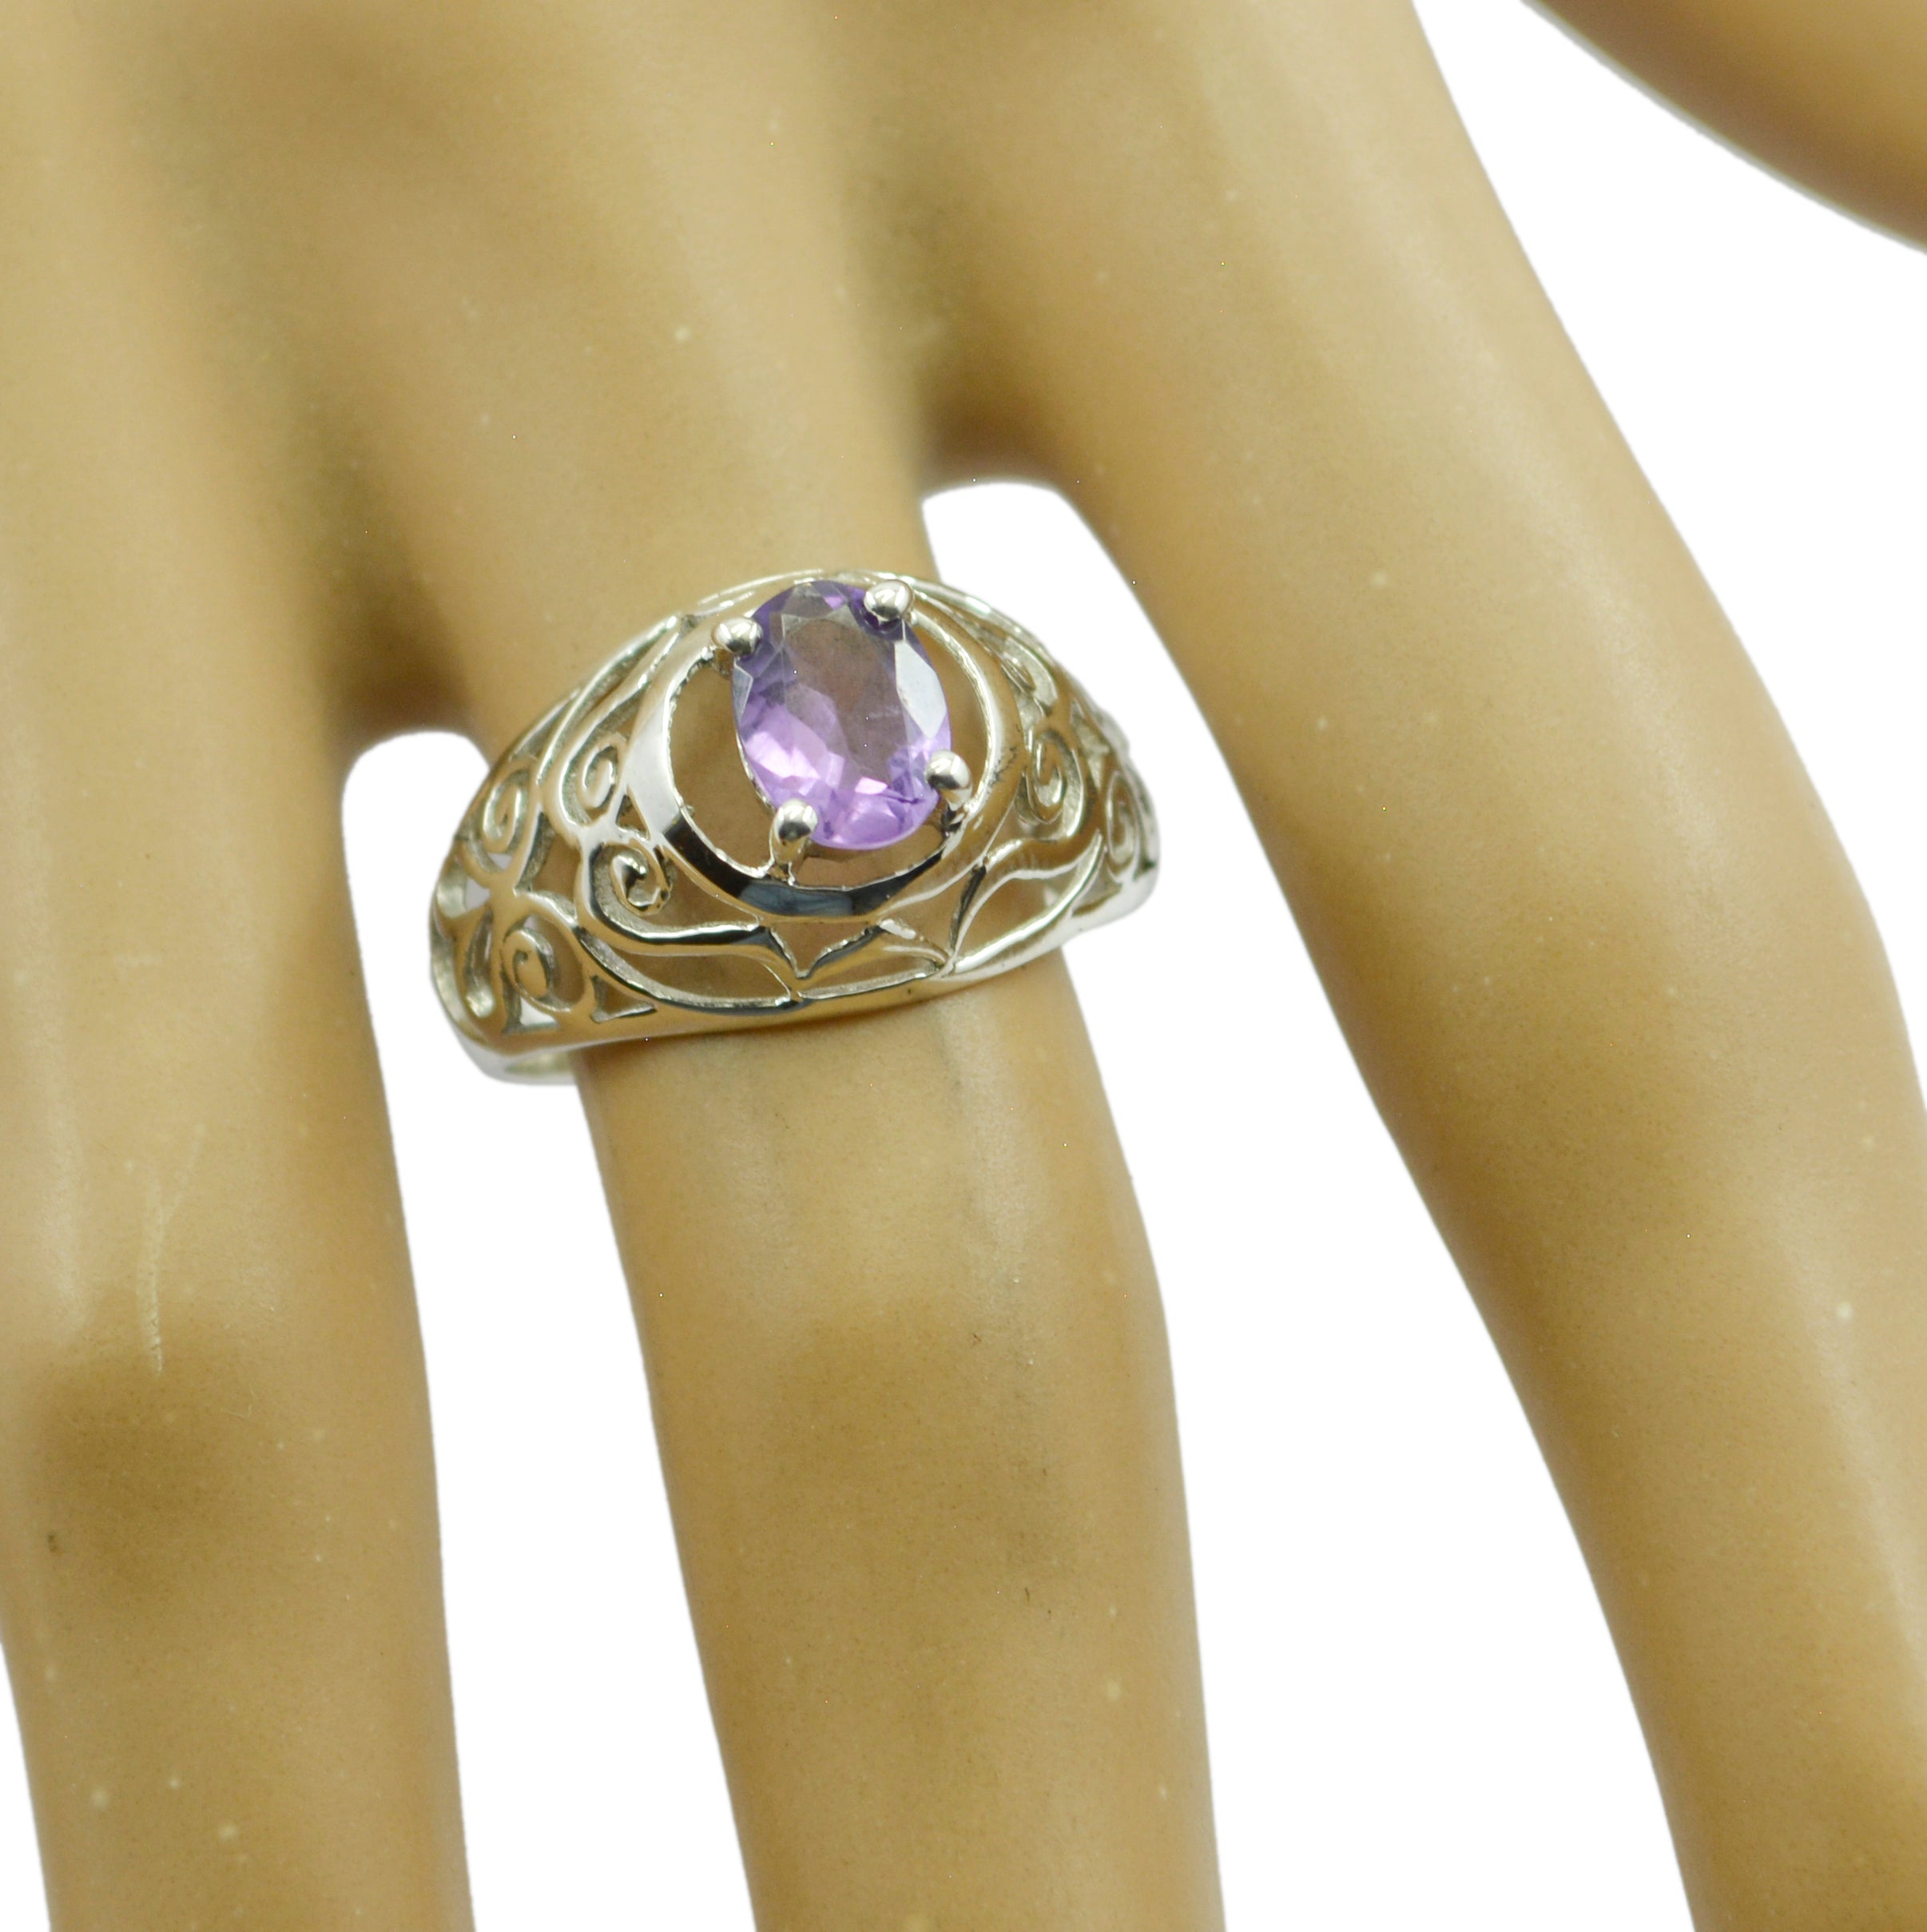 Engaging Gemstones Amethyst Sterling Silver Rings Best Jewelry Brands